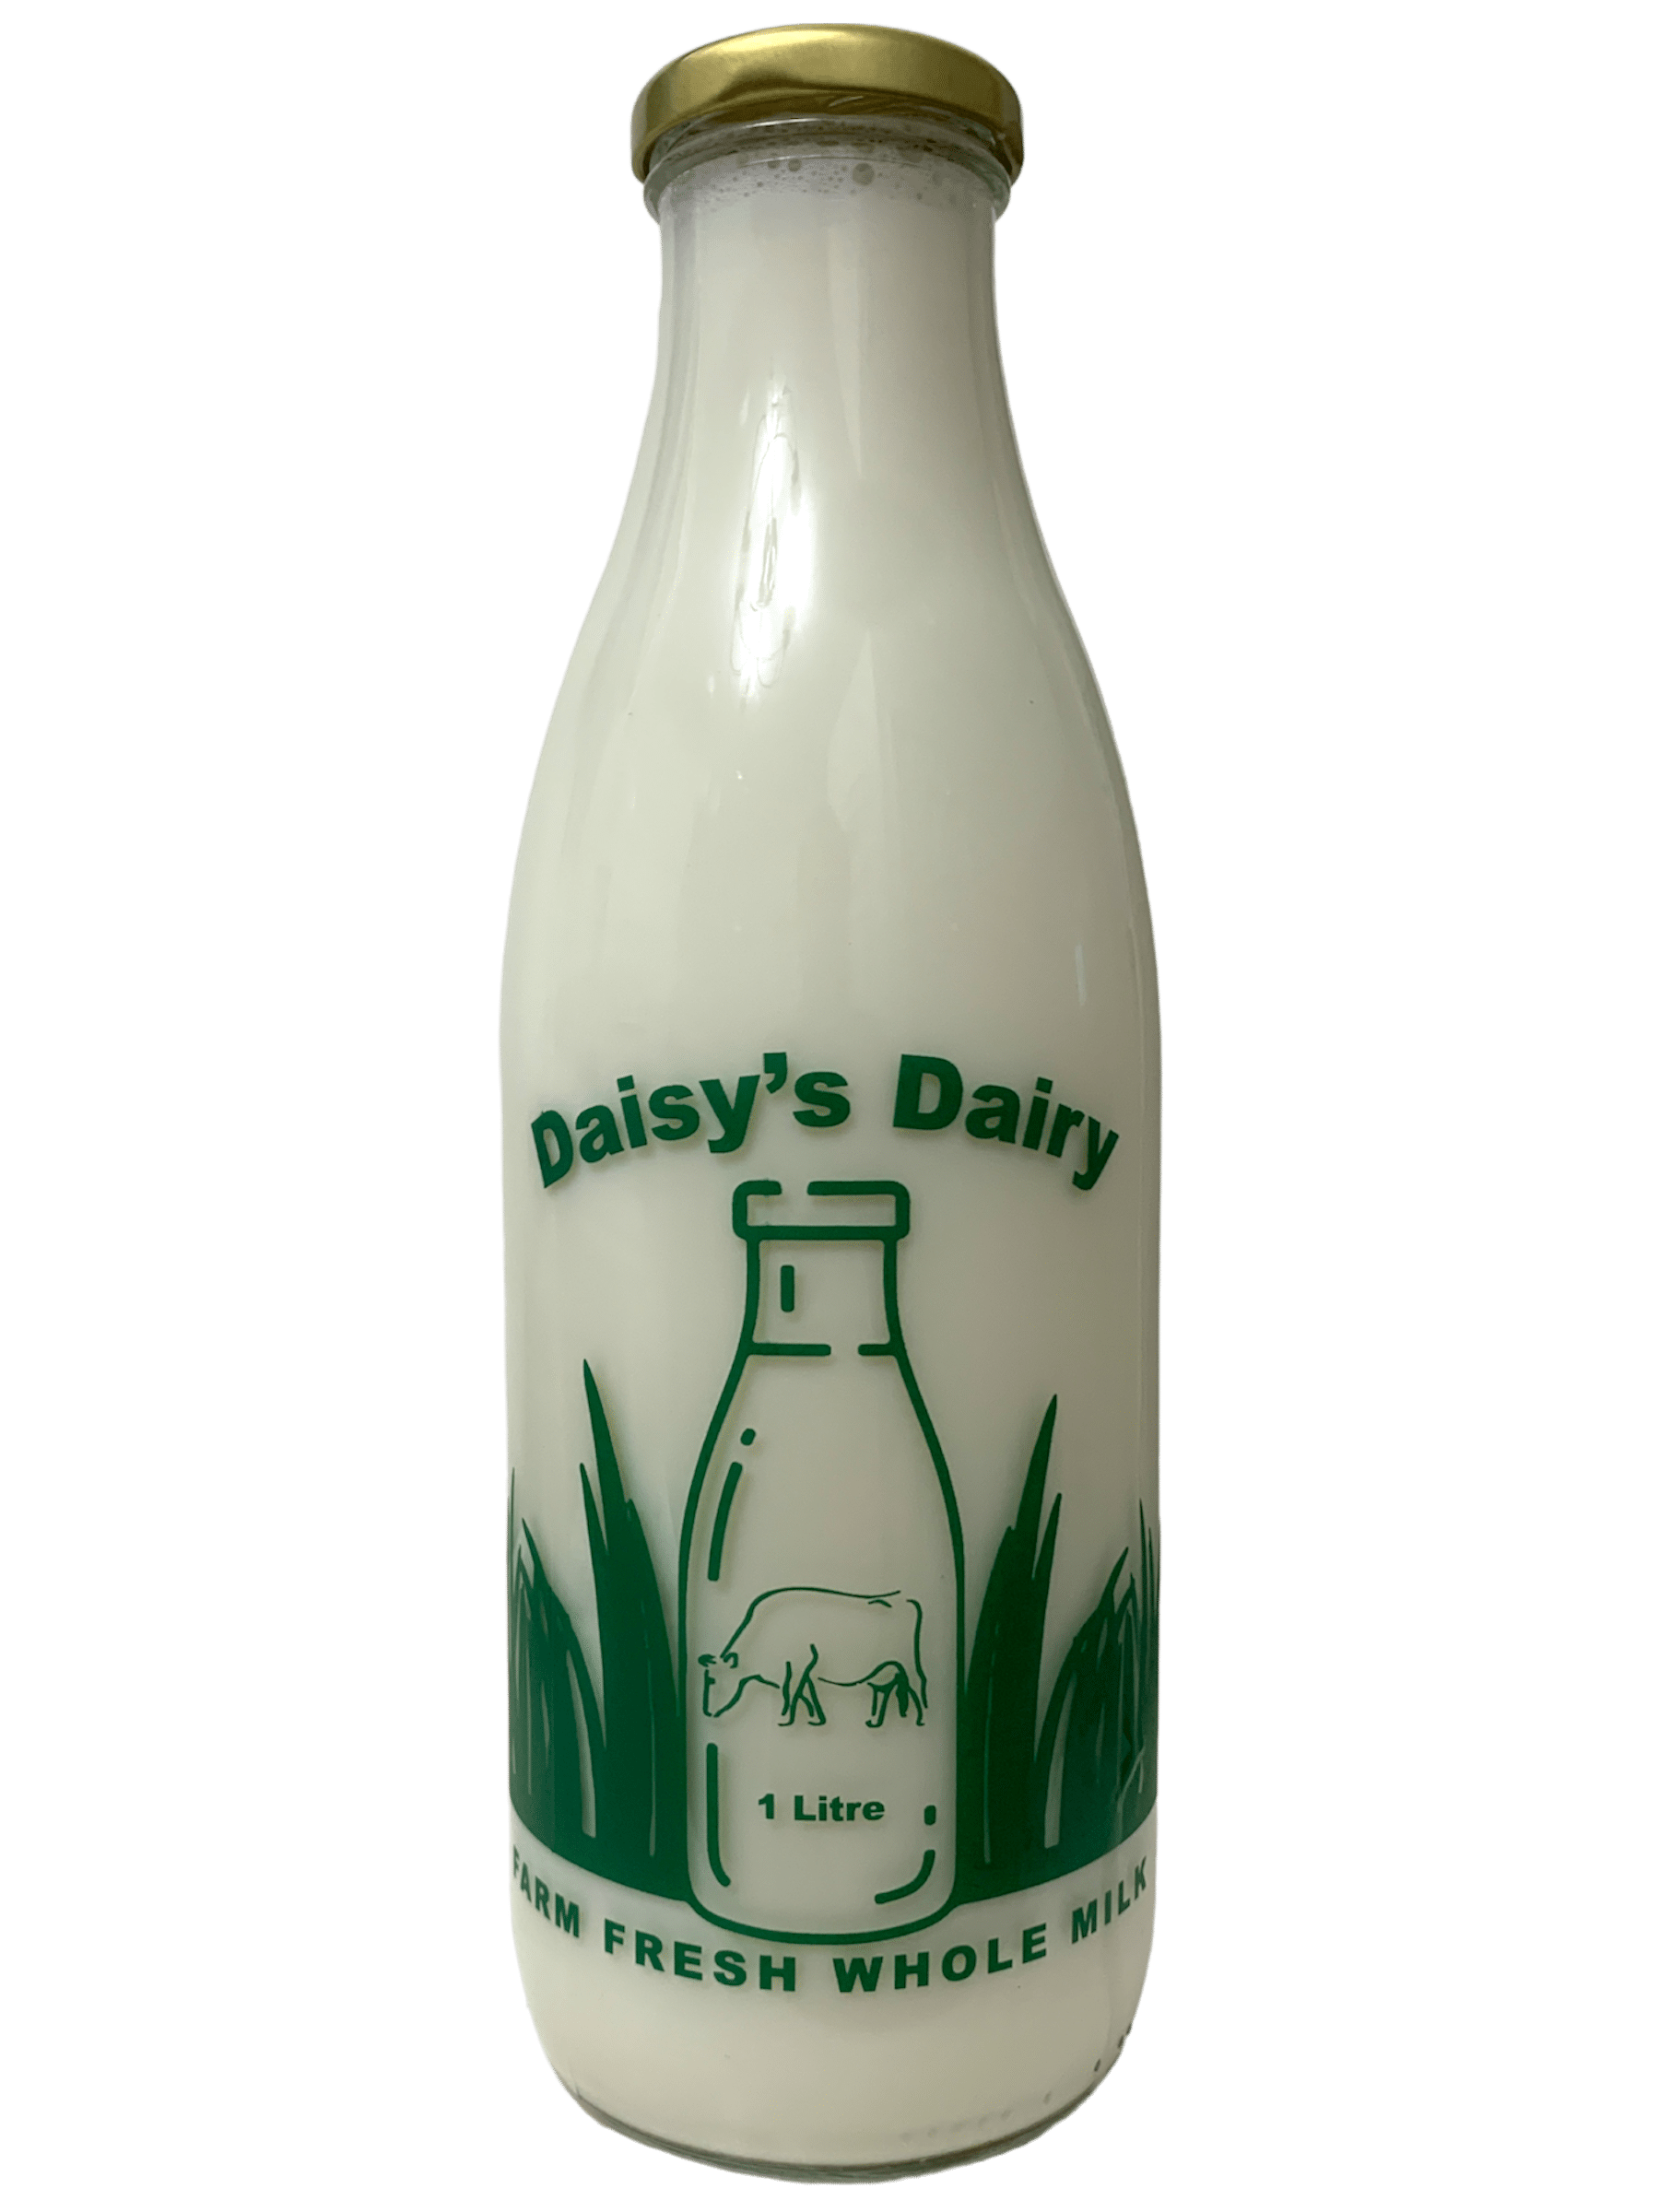 Daisy's Dairy (New22) - www.Kelis.info #KelisTheBottleBank